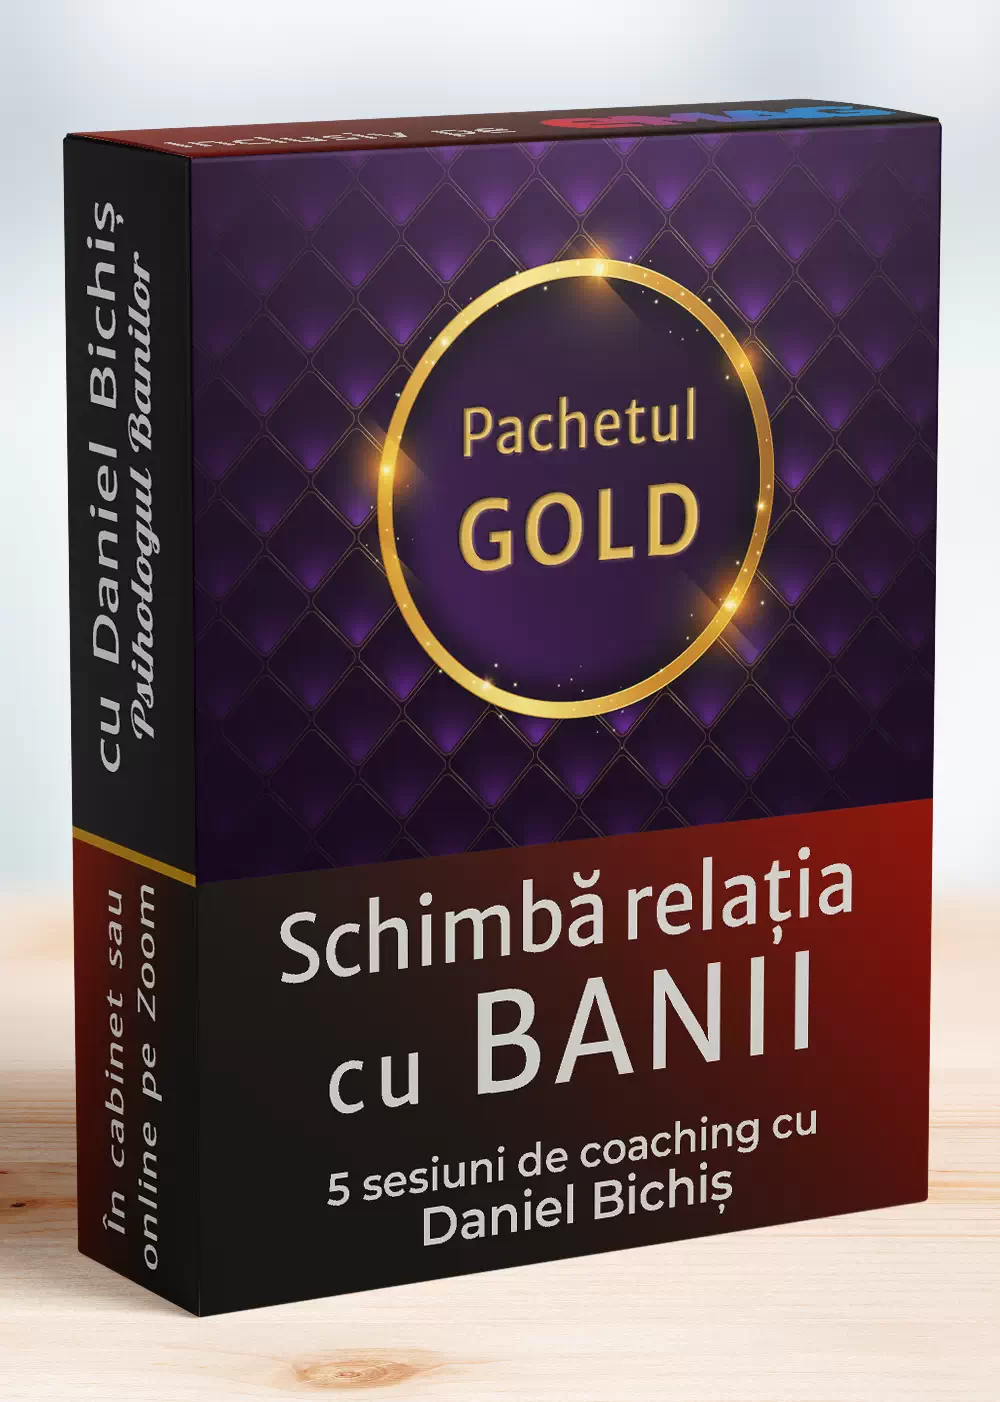 Pachet 5 sesiuni de coaching cu Daniel Bichiș